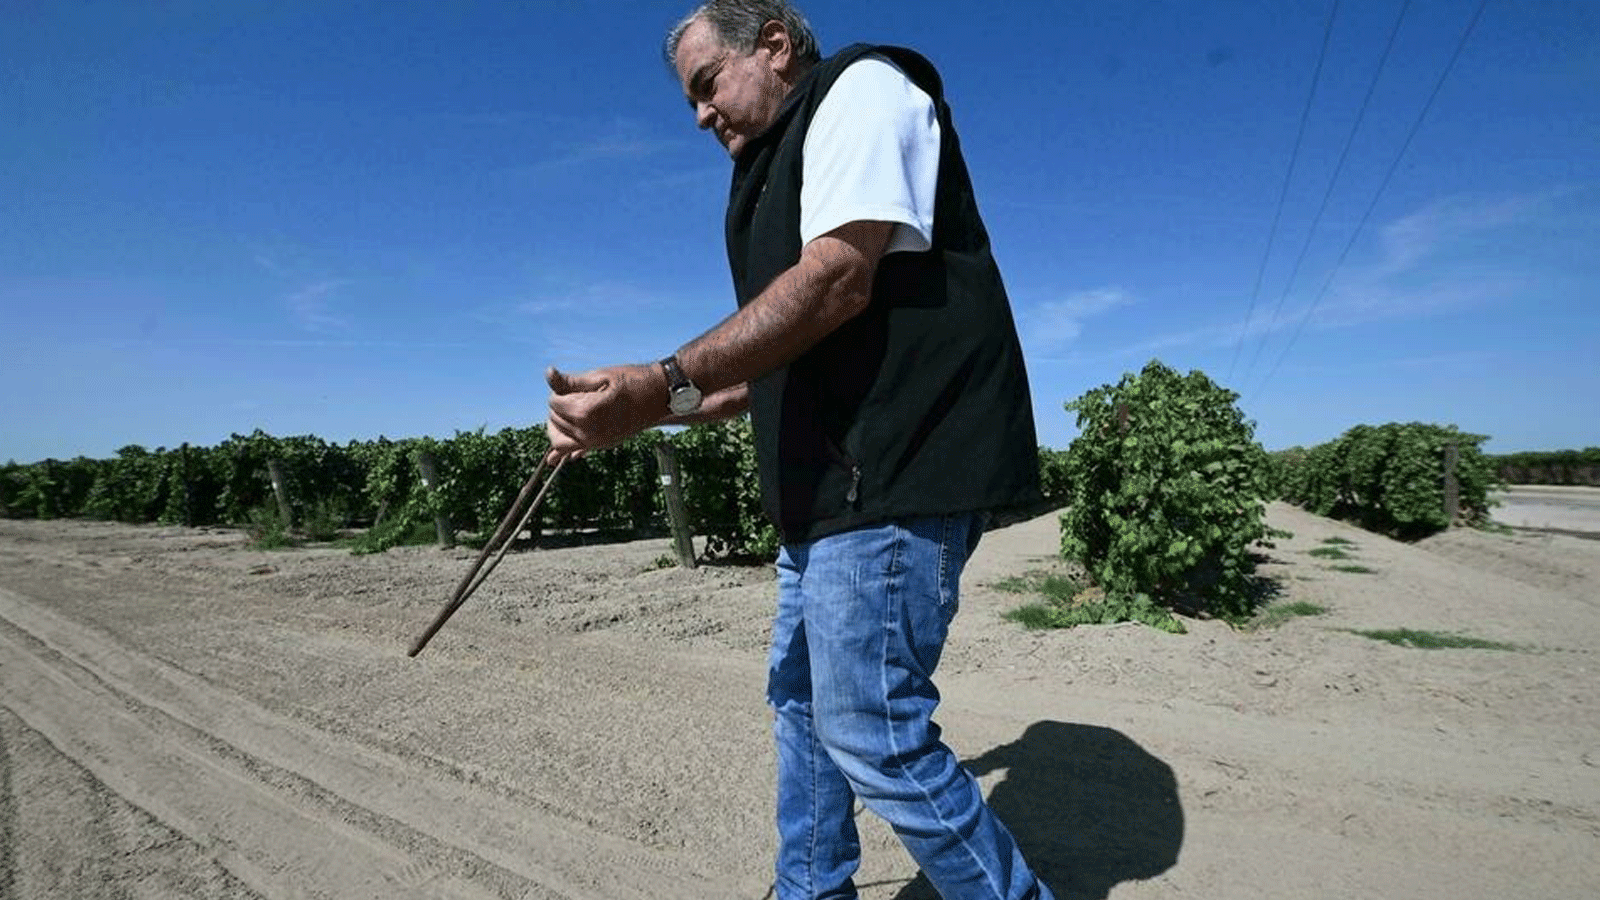 ديفيد ساغوسب يستخدم أسلوبه في العثور على مصادر المياه الجوفية باستخدام غصن خشب الزيتون على شكل حرف V في مزرعة في فريسنو، كاليفورنيا.